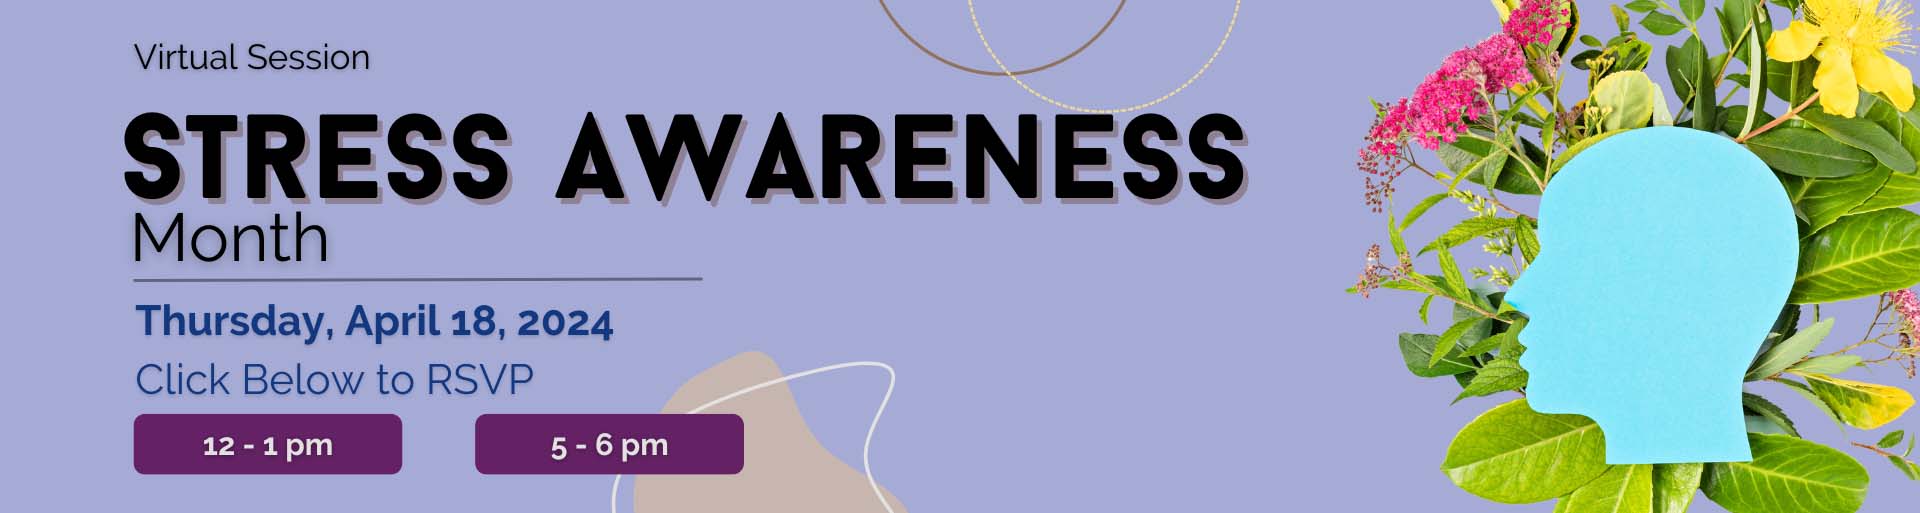 stress awareness banner